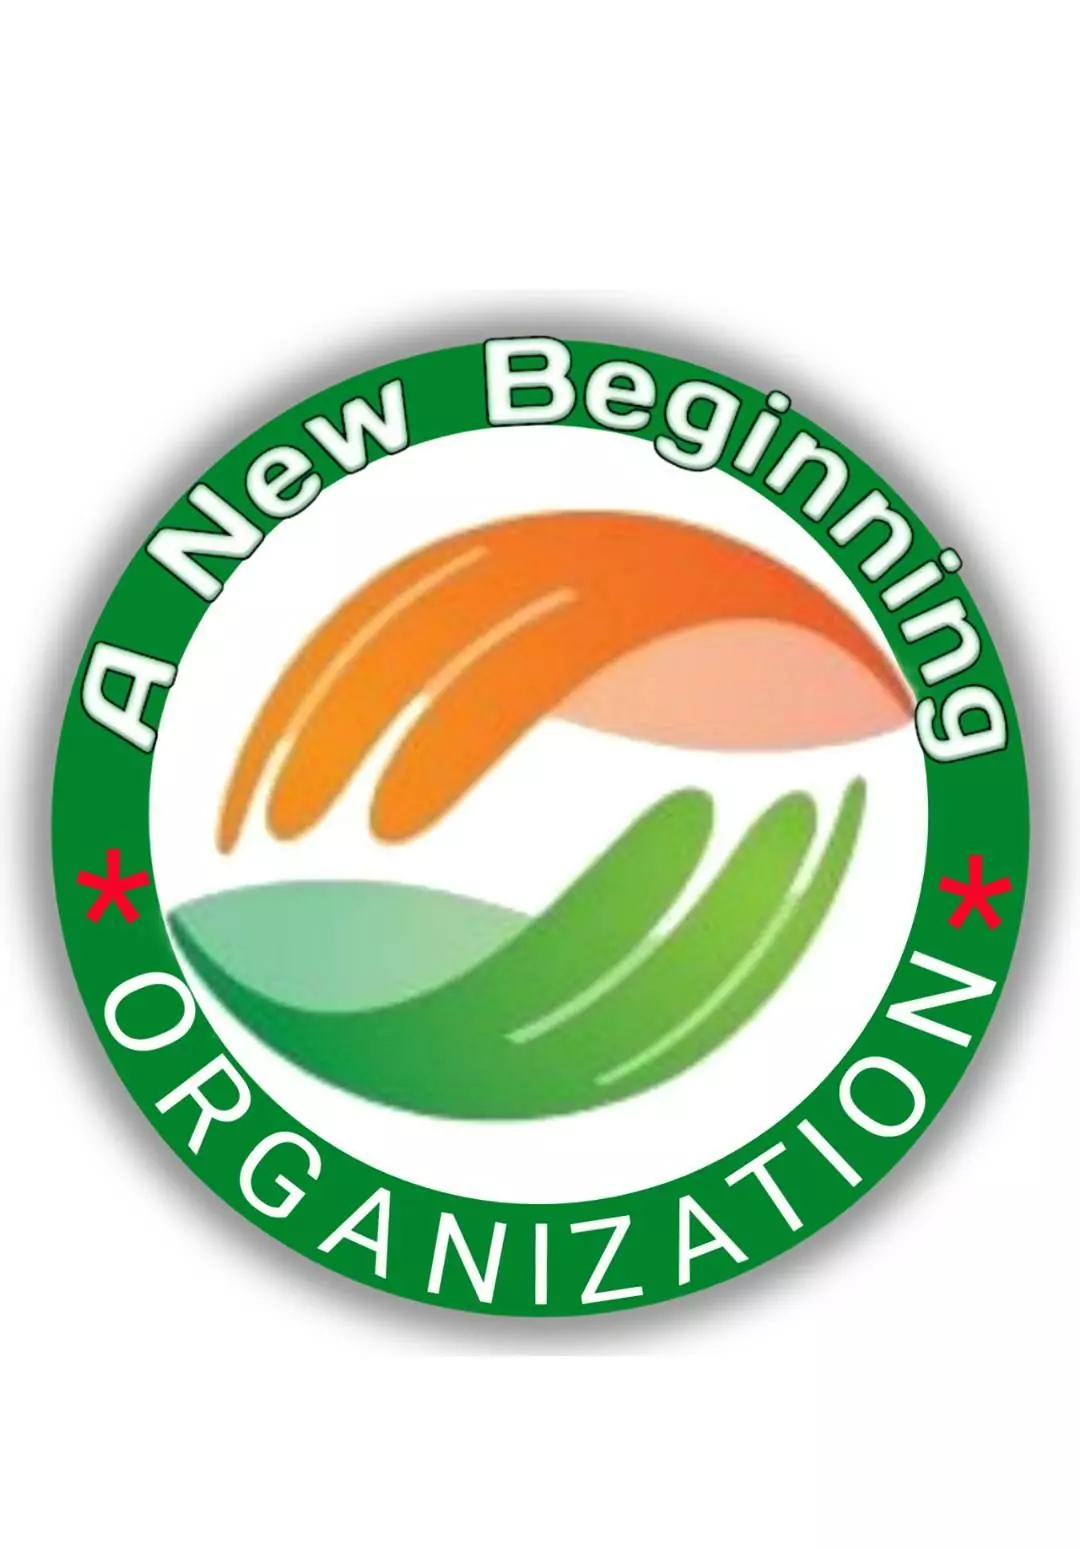 Programme de stages de l’organisation New Beginnings 2020 pour les jeunes leaders